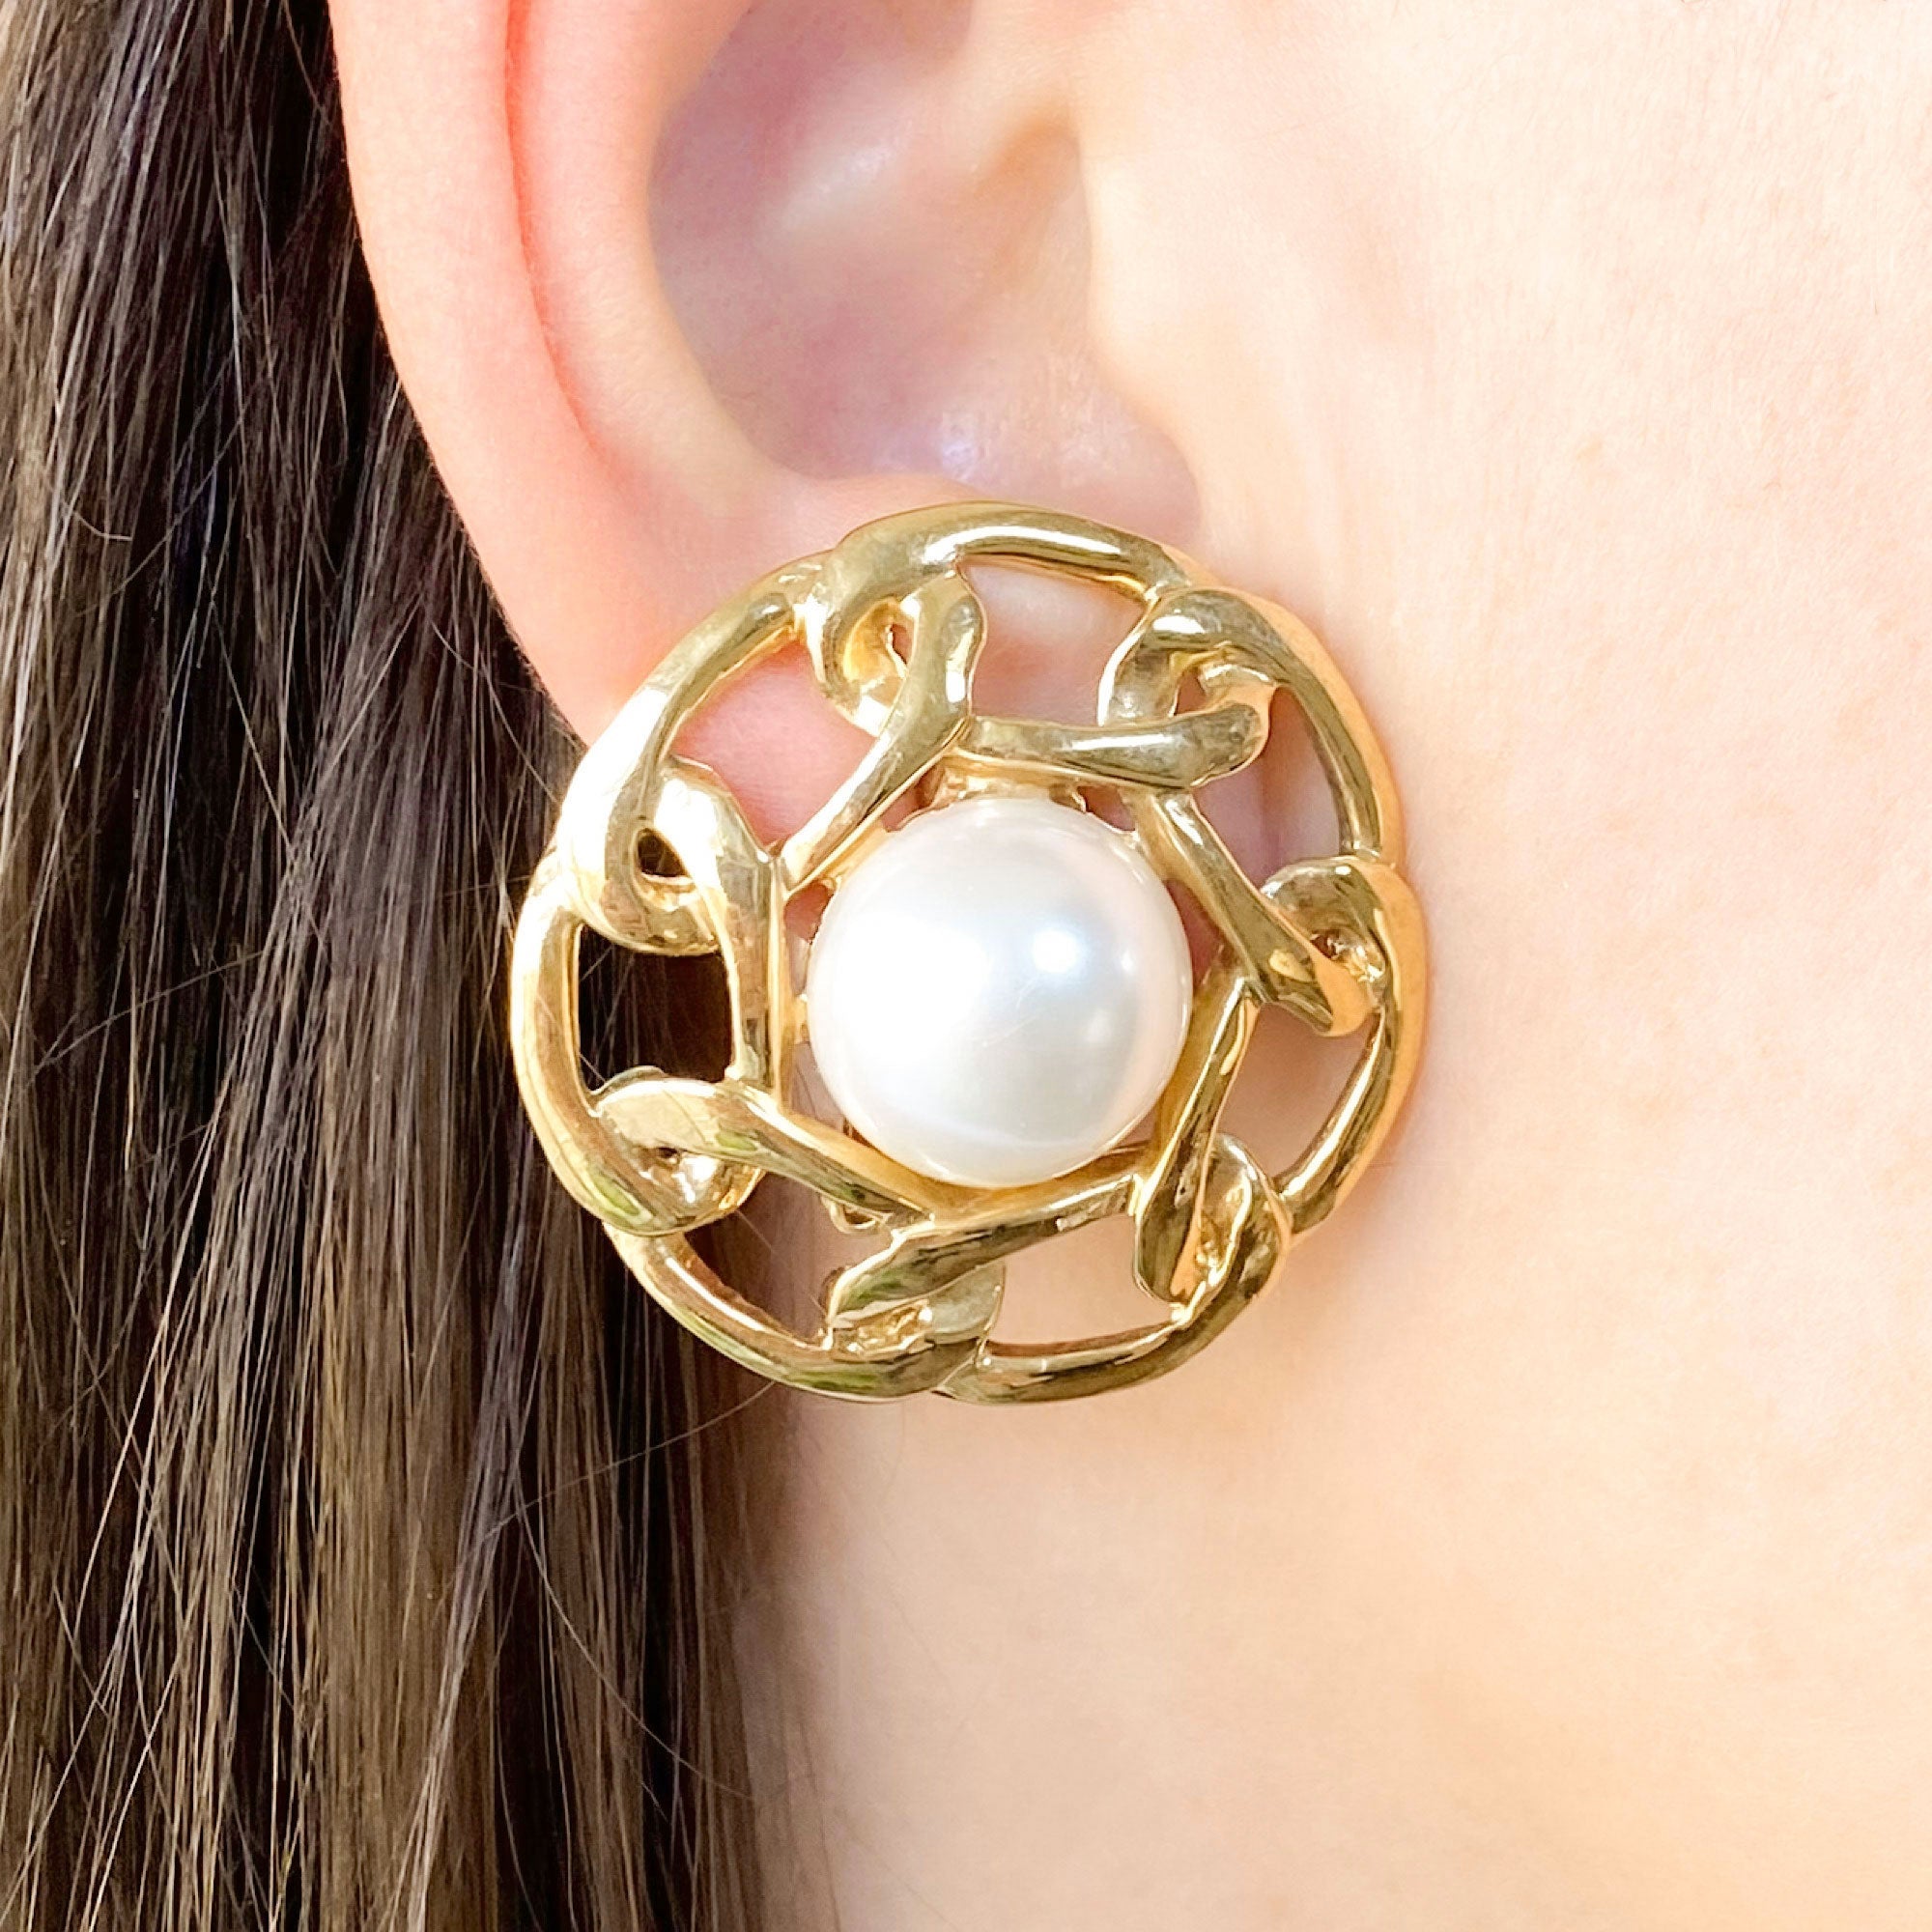 chanel earrings studs